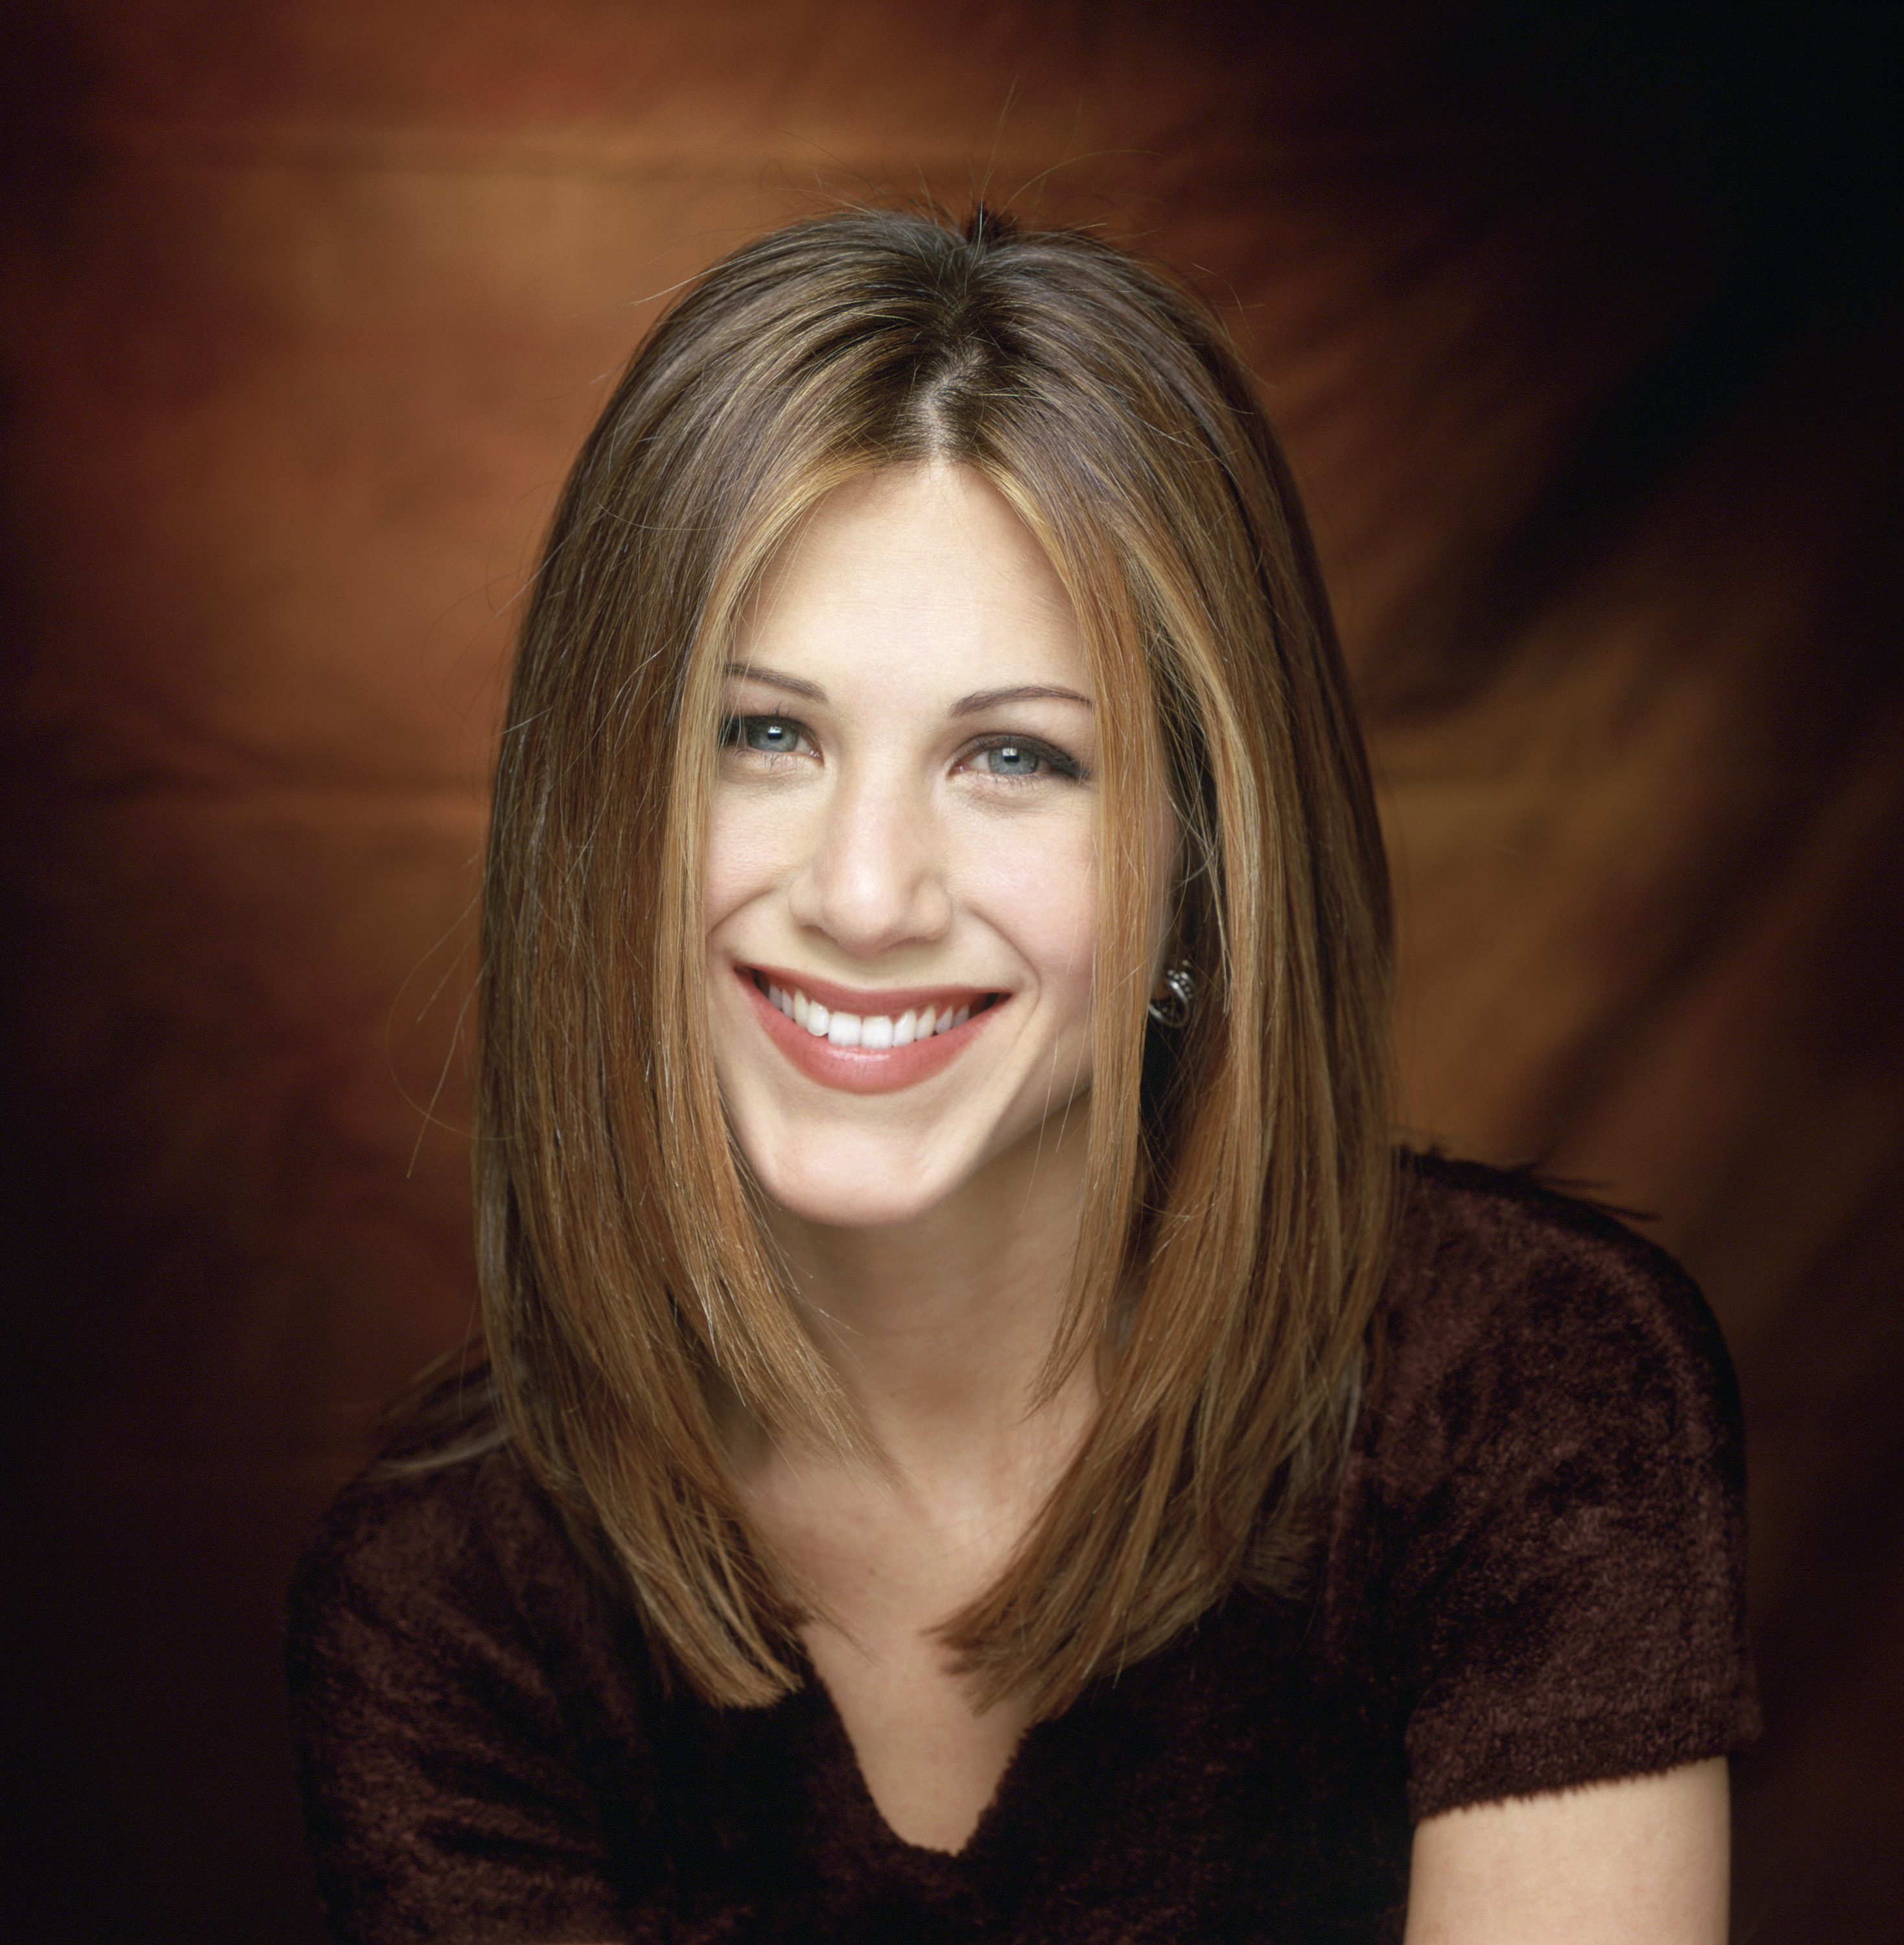 La célèbre actrice pose pour un portrait pour "Friends". | Source : Getty Images